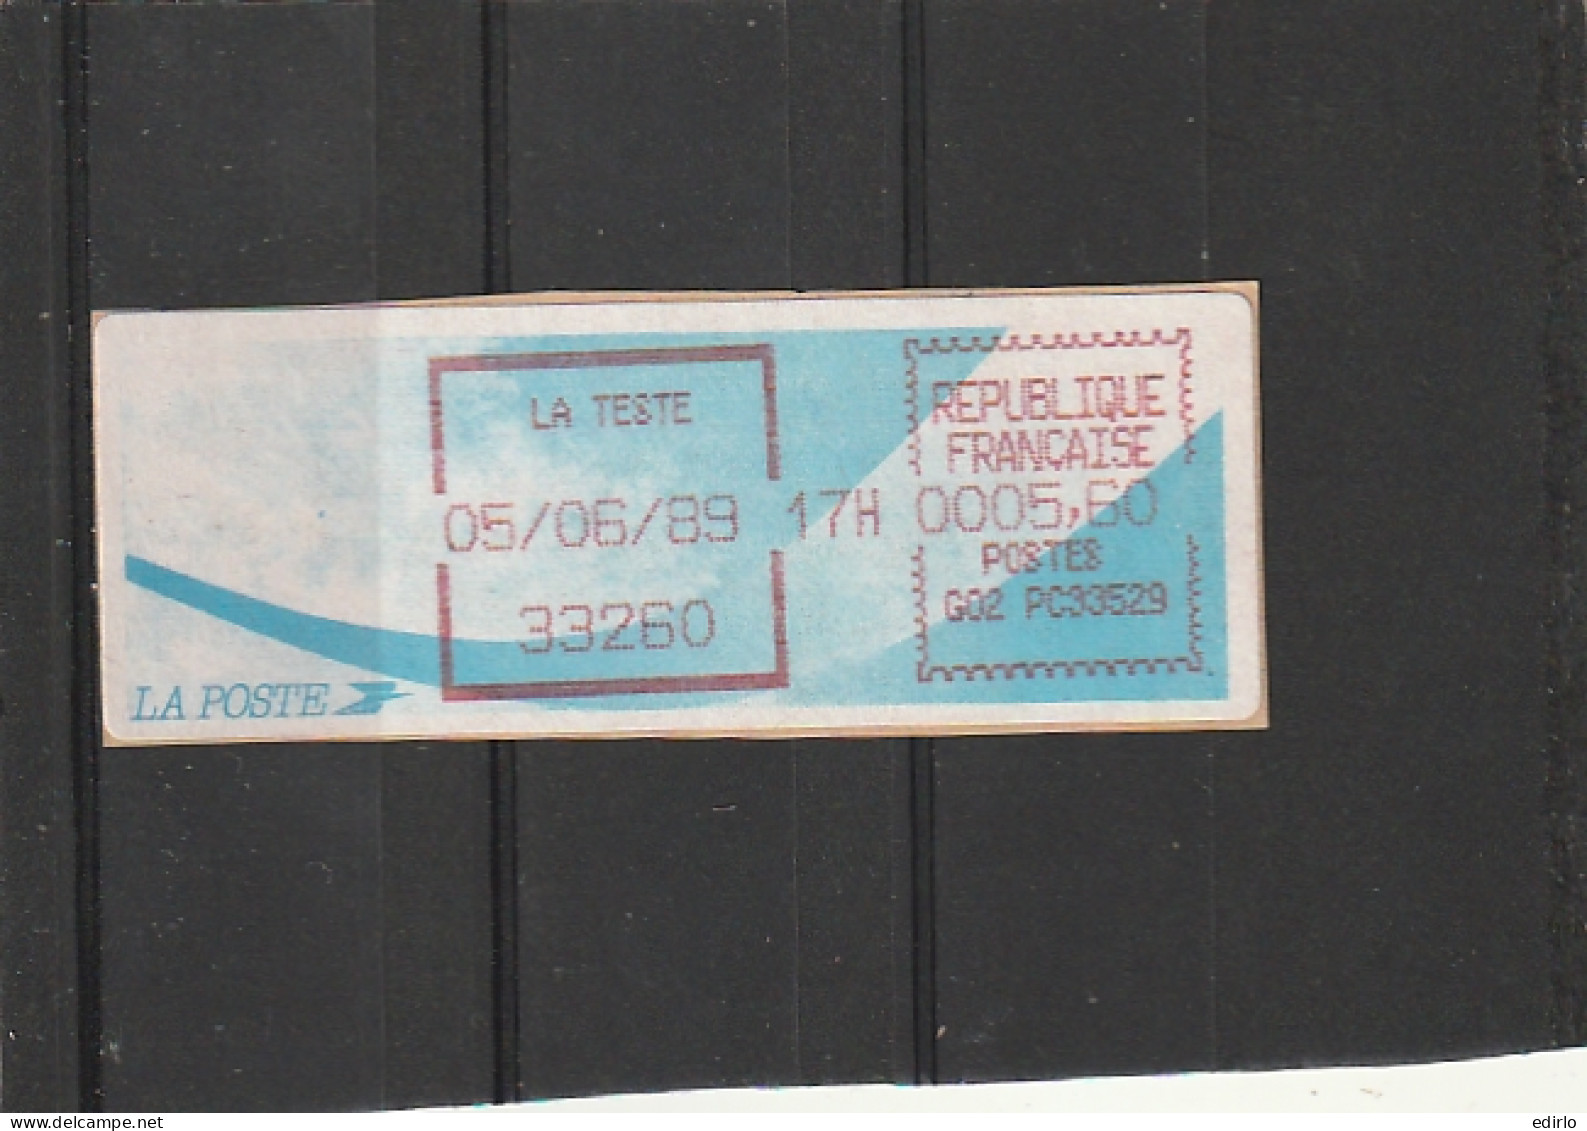 ///  FRANCE ///  LSA  Timbre Vignette Distributeur Comète LA TESTE Gironde - 1988 Type « Comète »